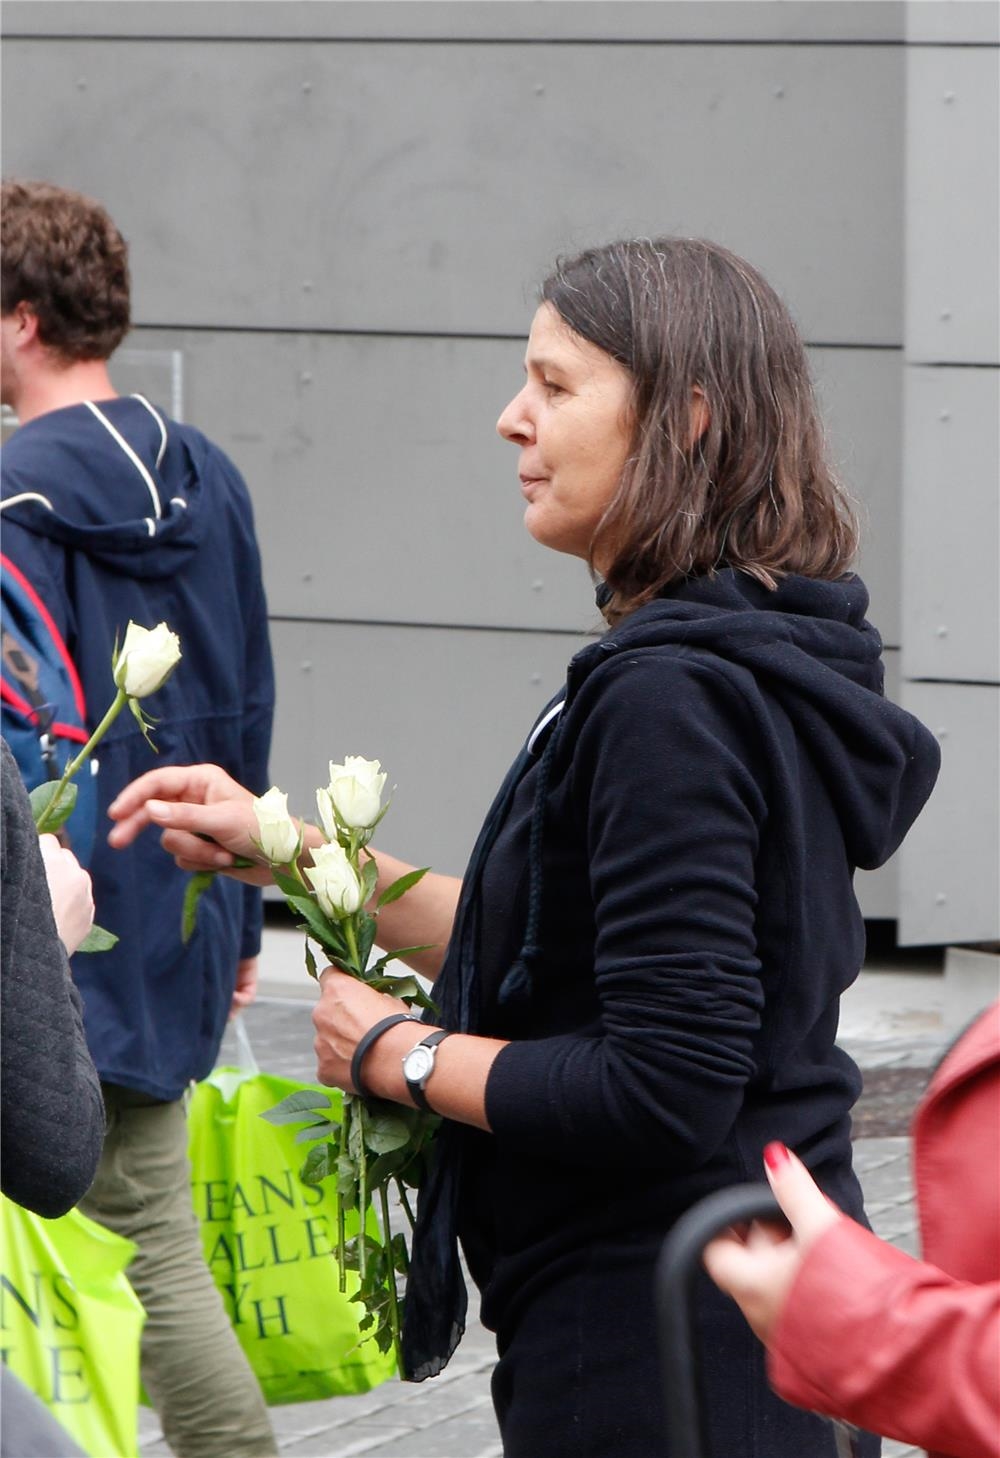 Maria Schmelz vom Drogenkontaktladen Talk Inn der Caritas in Kempten verteilte weiße Rosen an die Passanten. (Bernhard Gattner)